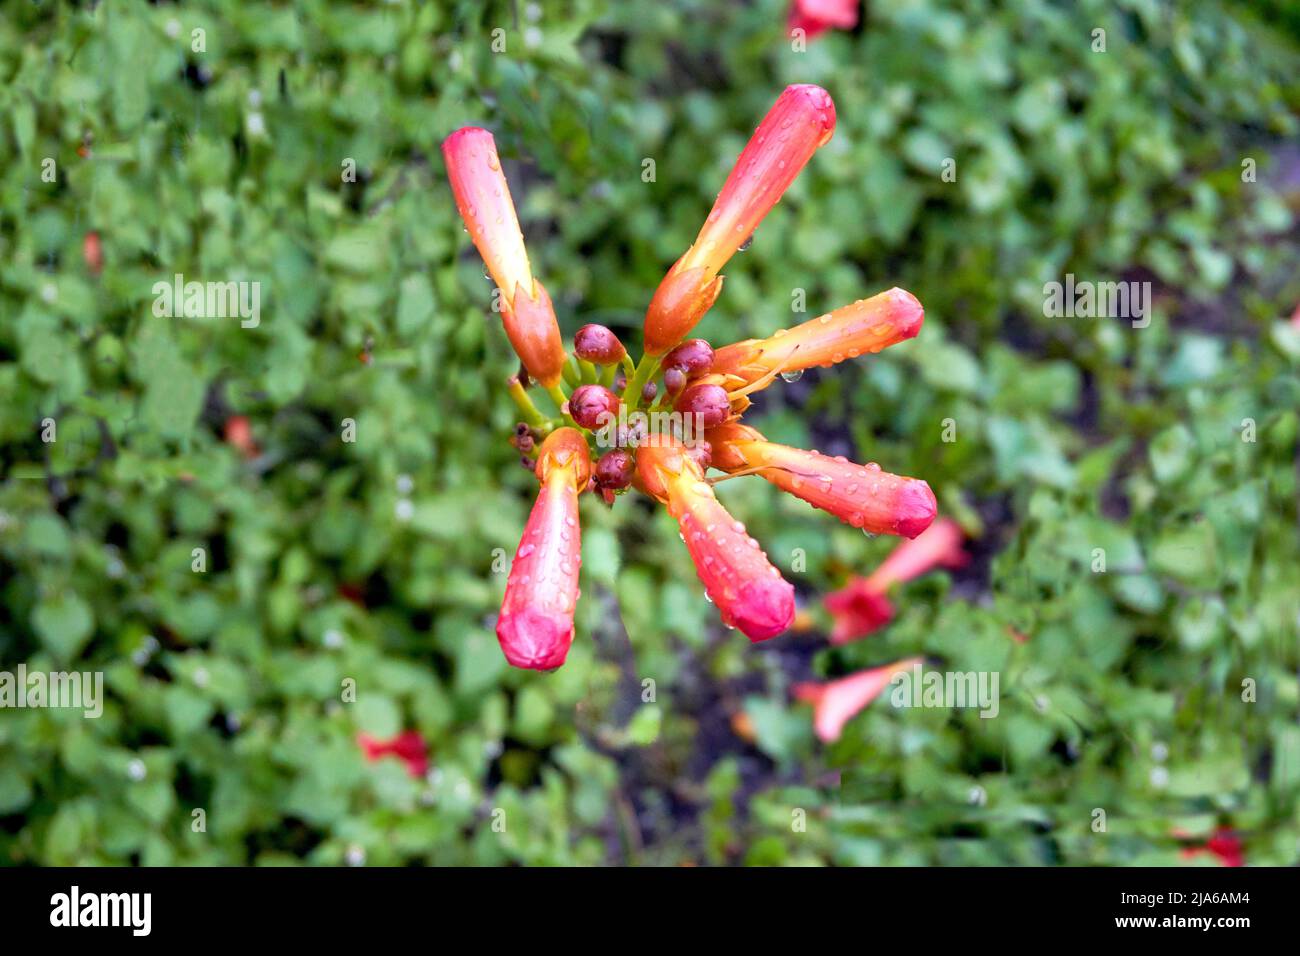 Red strict féoder trompette vigne sous la pluie légère parmi la verdure Banque D'Images